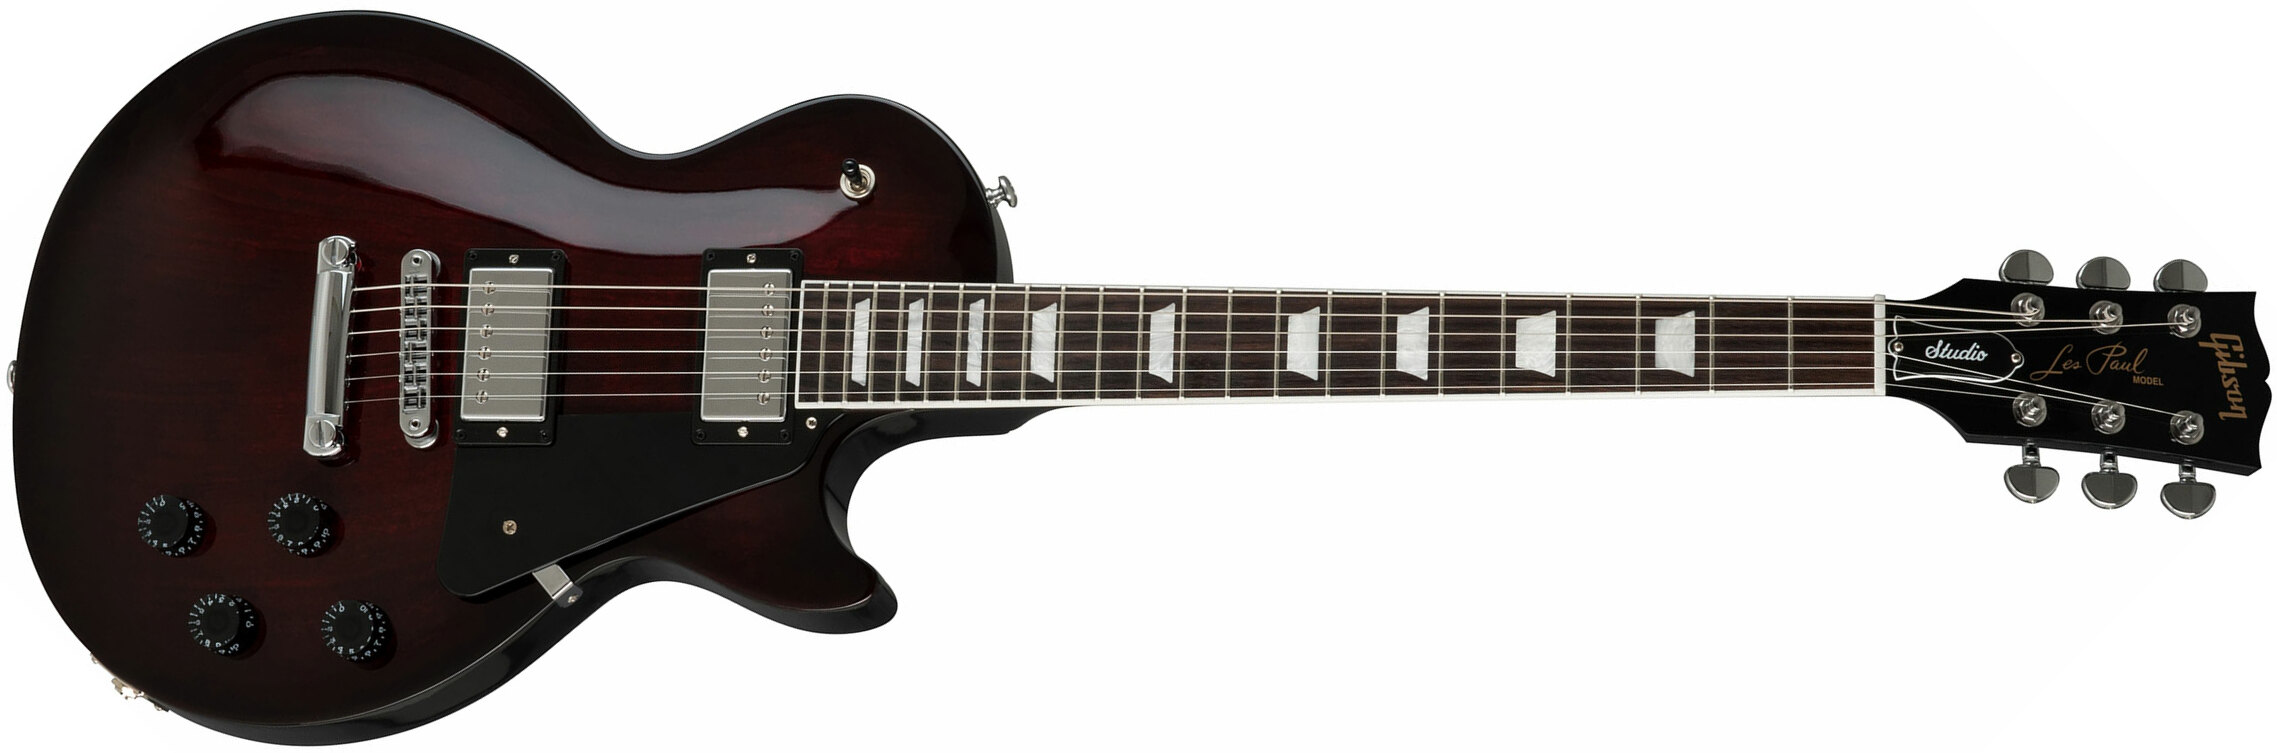 Gibson Les Paul Studio 2019 Hh Ht Rw - Bbq Burst - Guitarra eléctrica de corte único. - Main picture